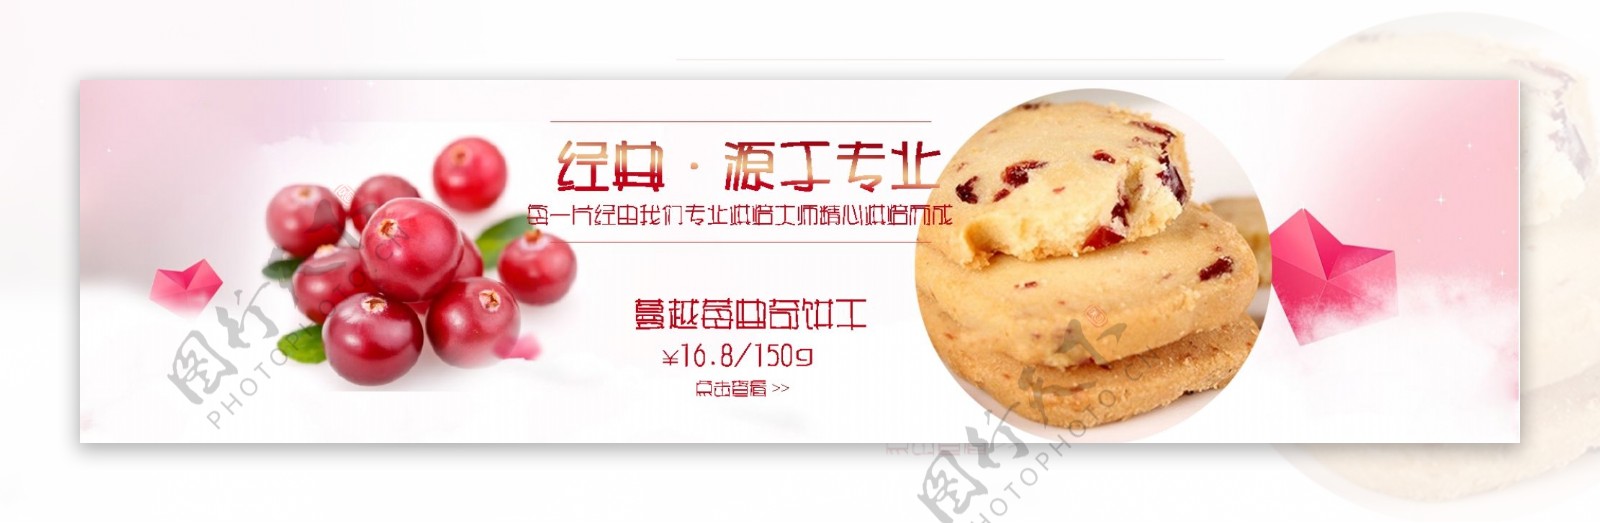 蔓越莓曲奇饼干全屏海报banner